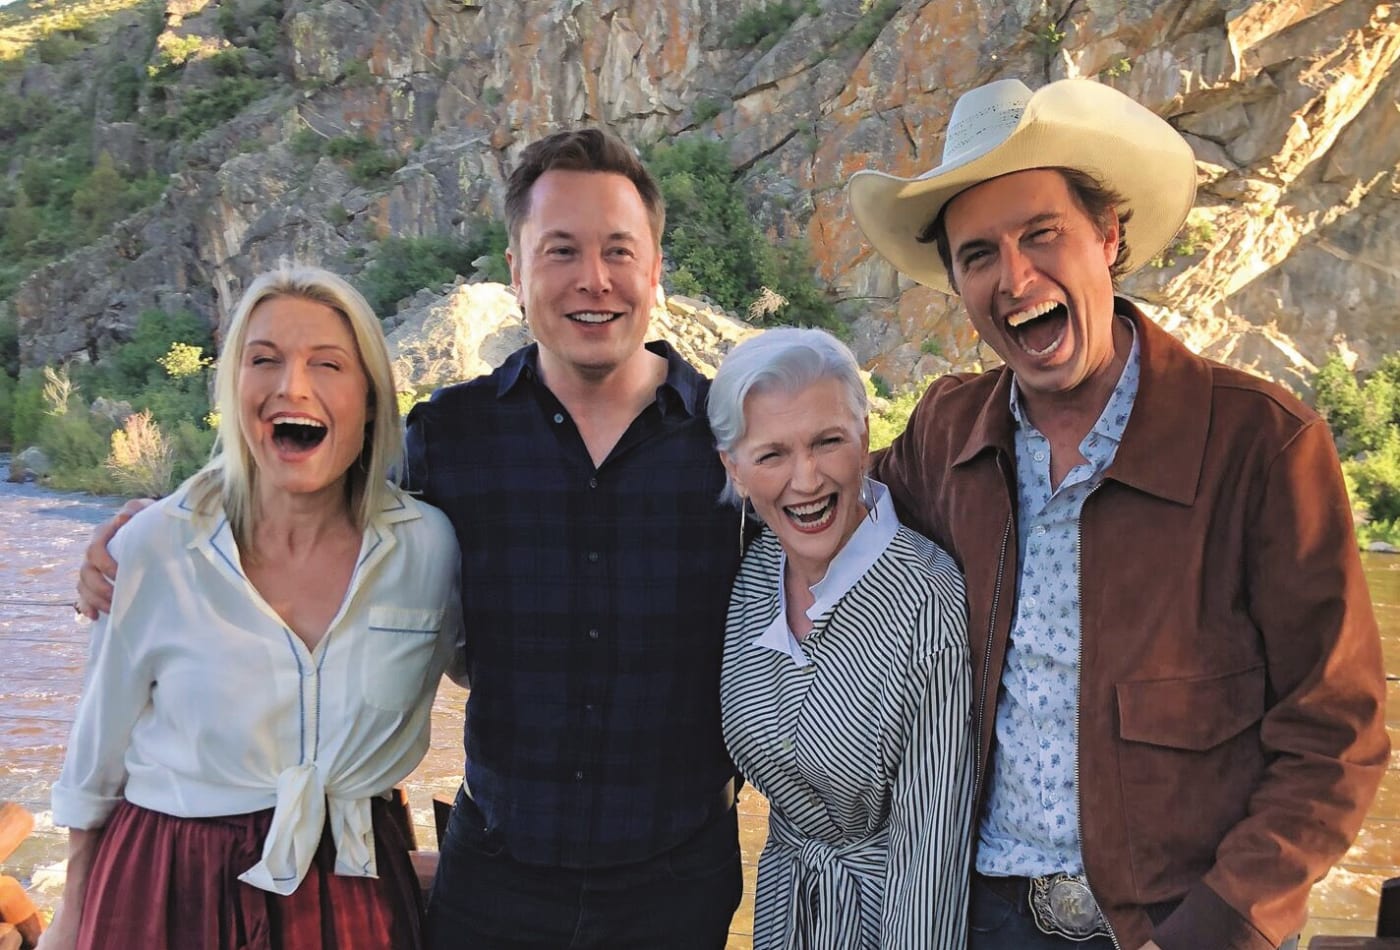 Cum arată frații lui Elon Musk. FOTO: Elon Musk alături de mama și frații săi